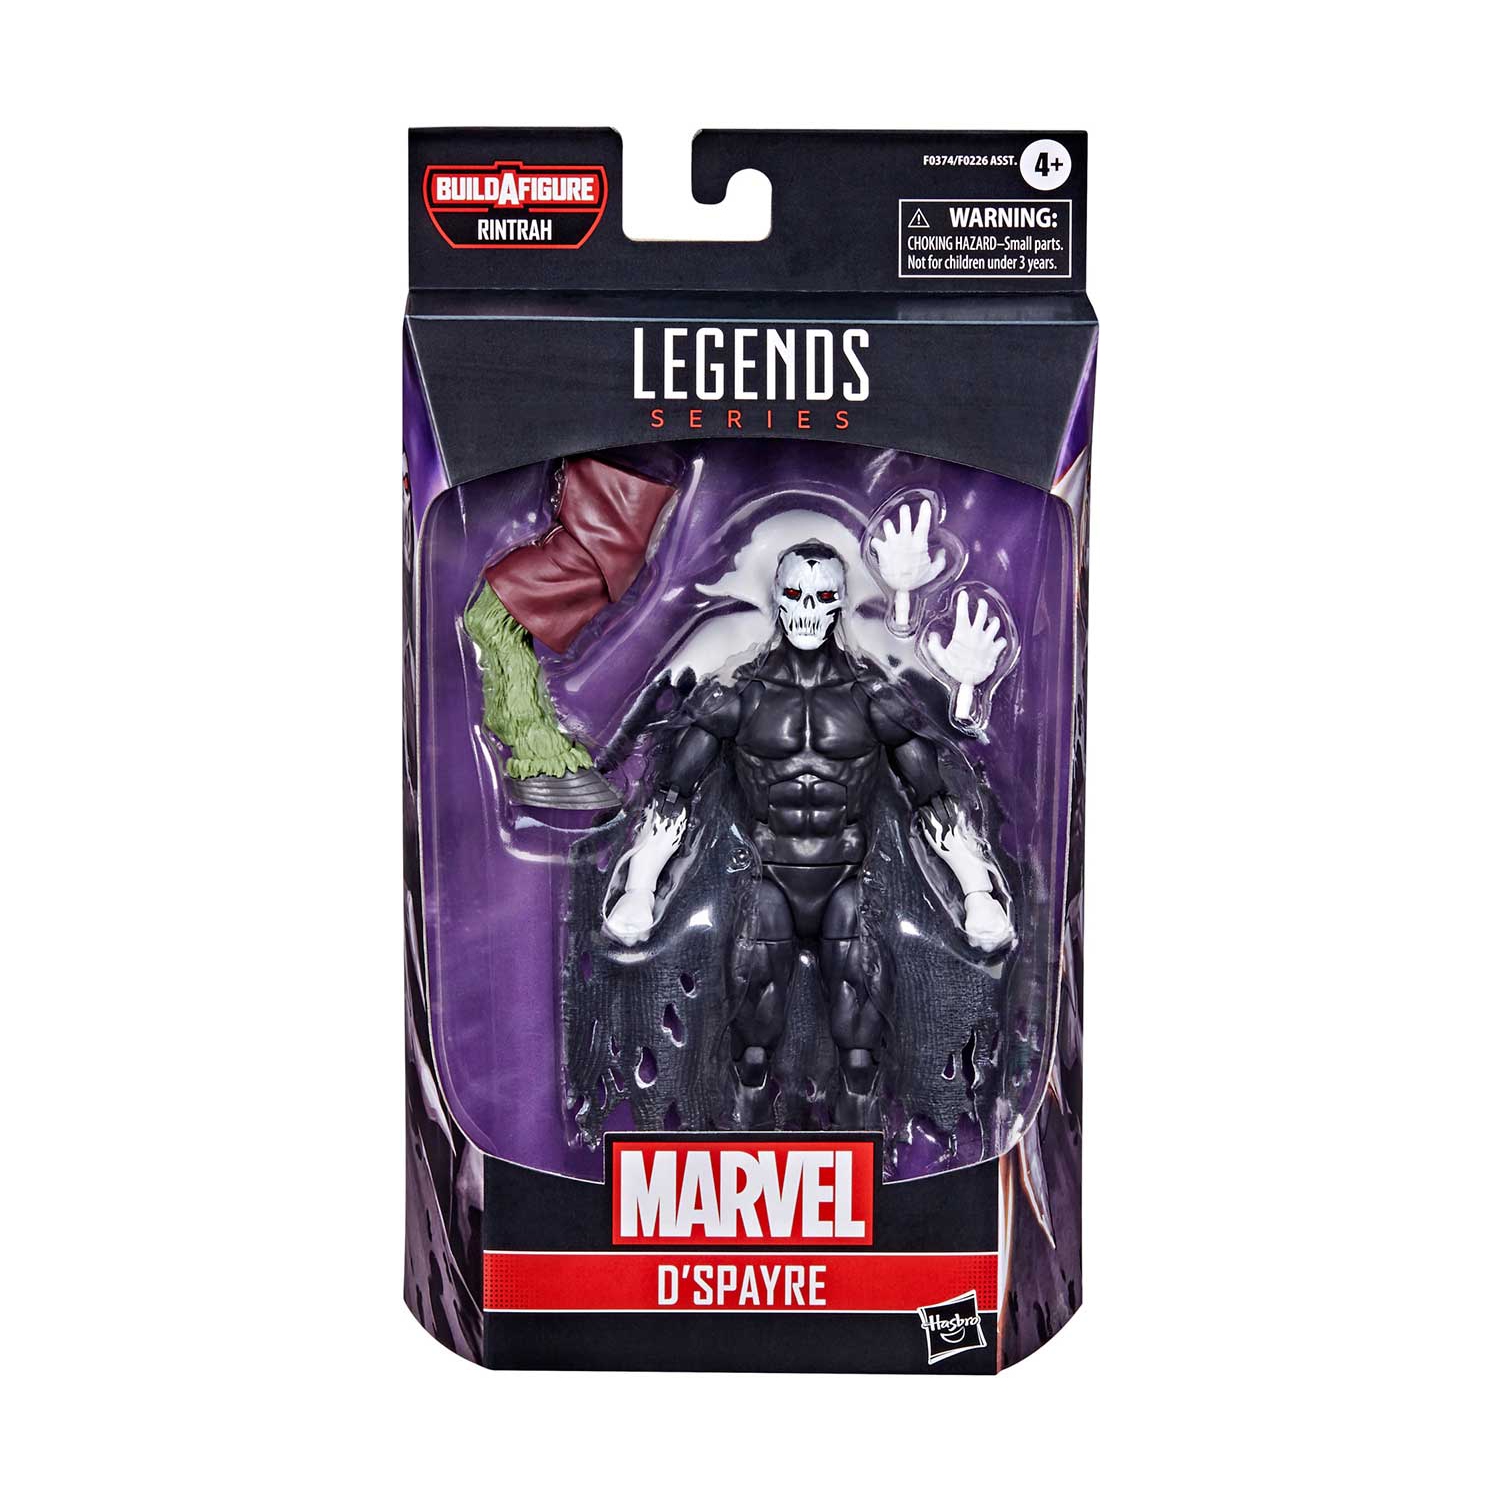 Marvel Legends Doctor Strange 6 Inch Action Figure BAF Rintrah - D’Spayre